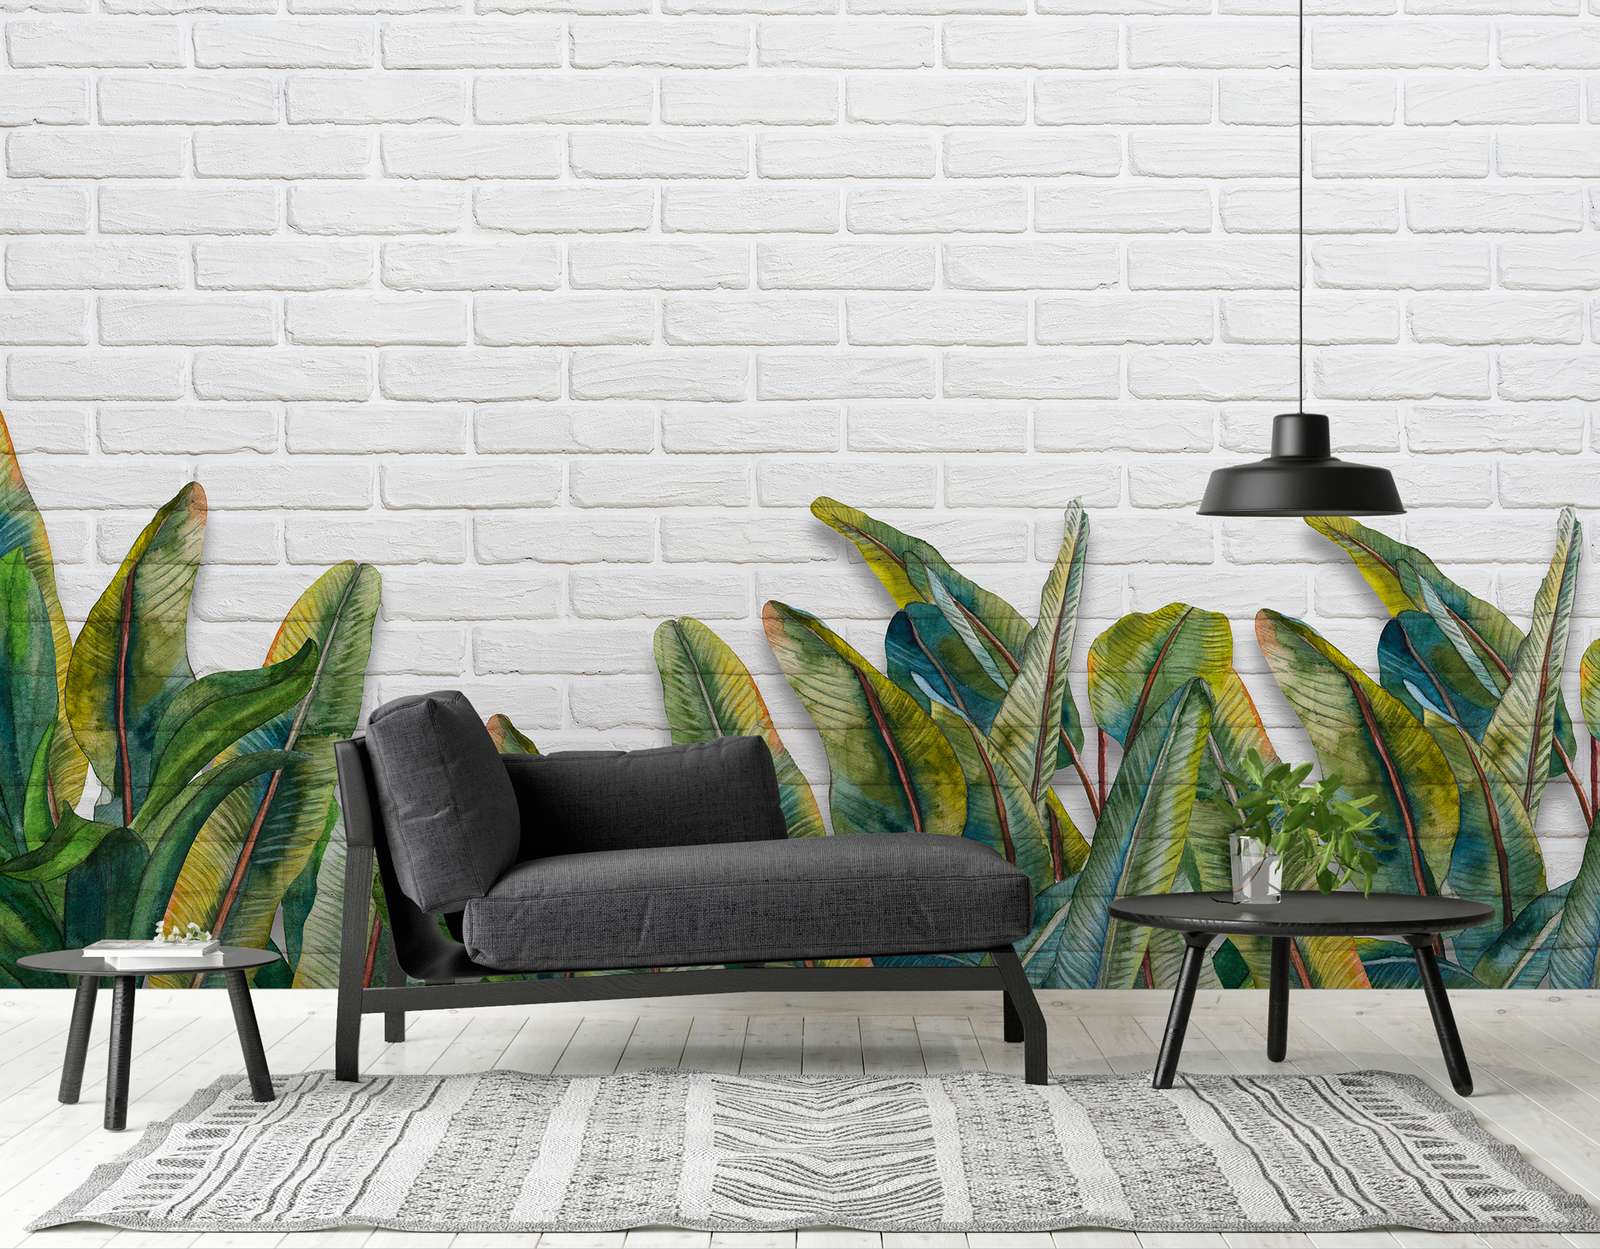             Digital behang met bladeren voor een witte bakstenen muur - Groen, Wit
        